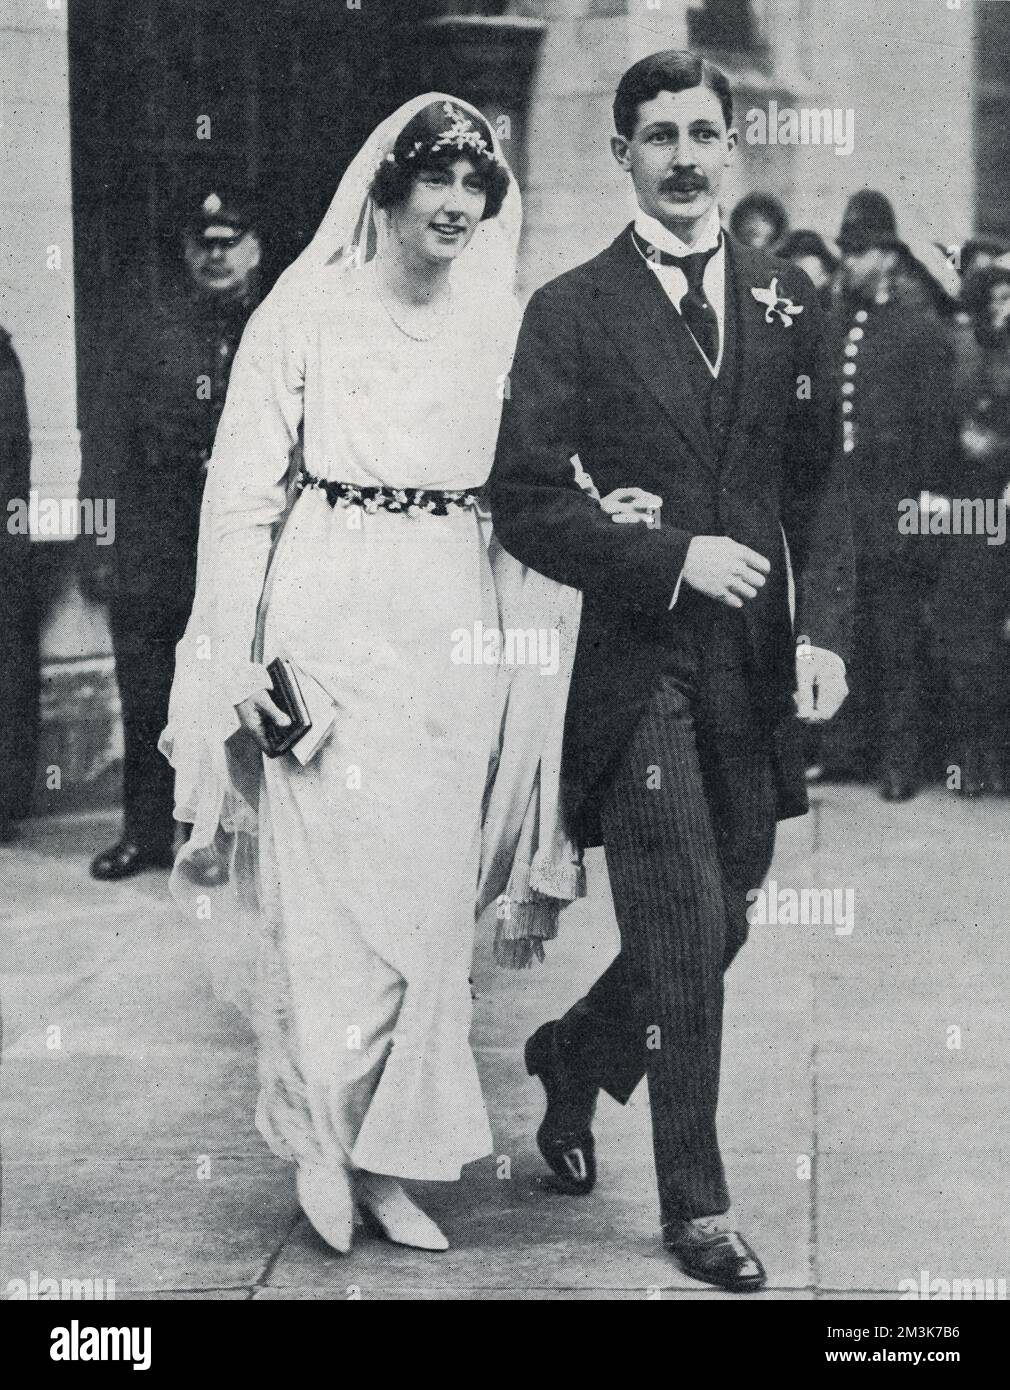 Une photographie de Harold Macmillan et de Lady Dorothy Macmillan quittant St Margaret's, Westminster. Date : 28th avril 1920 Banque D'Images